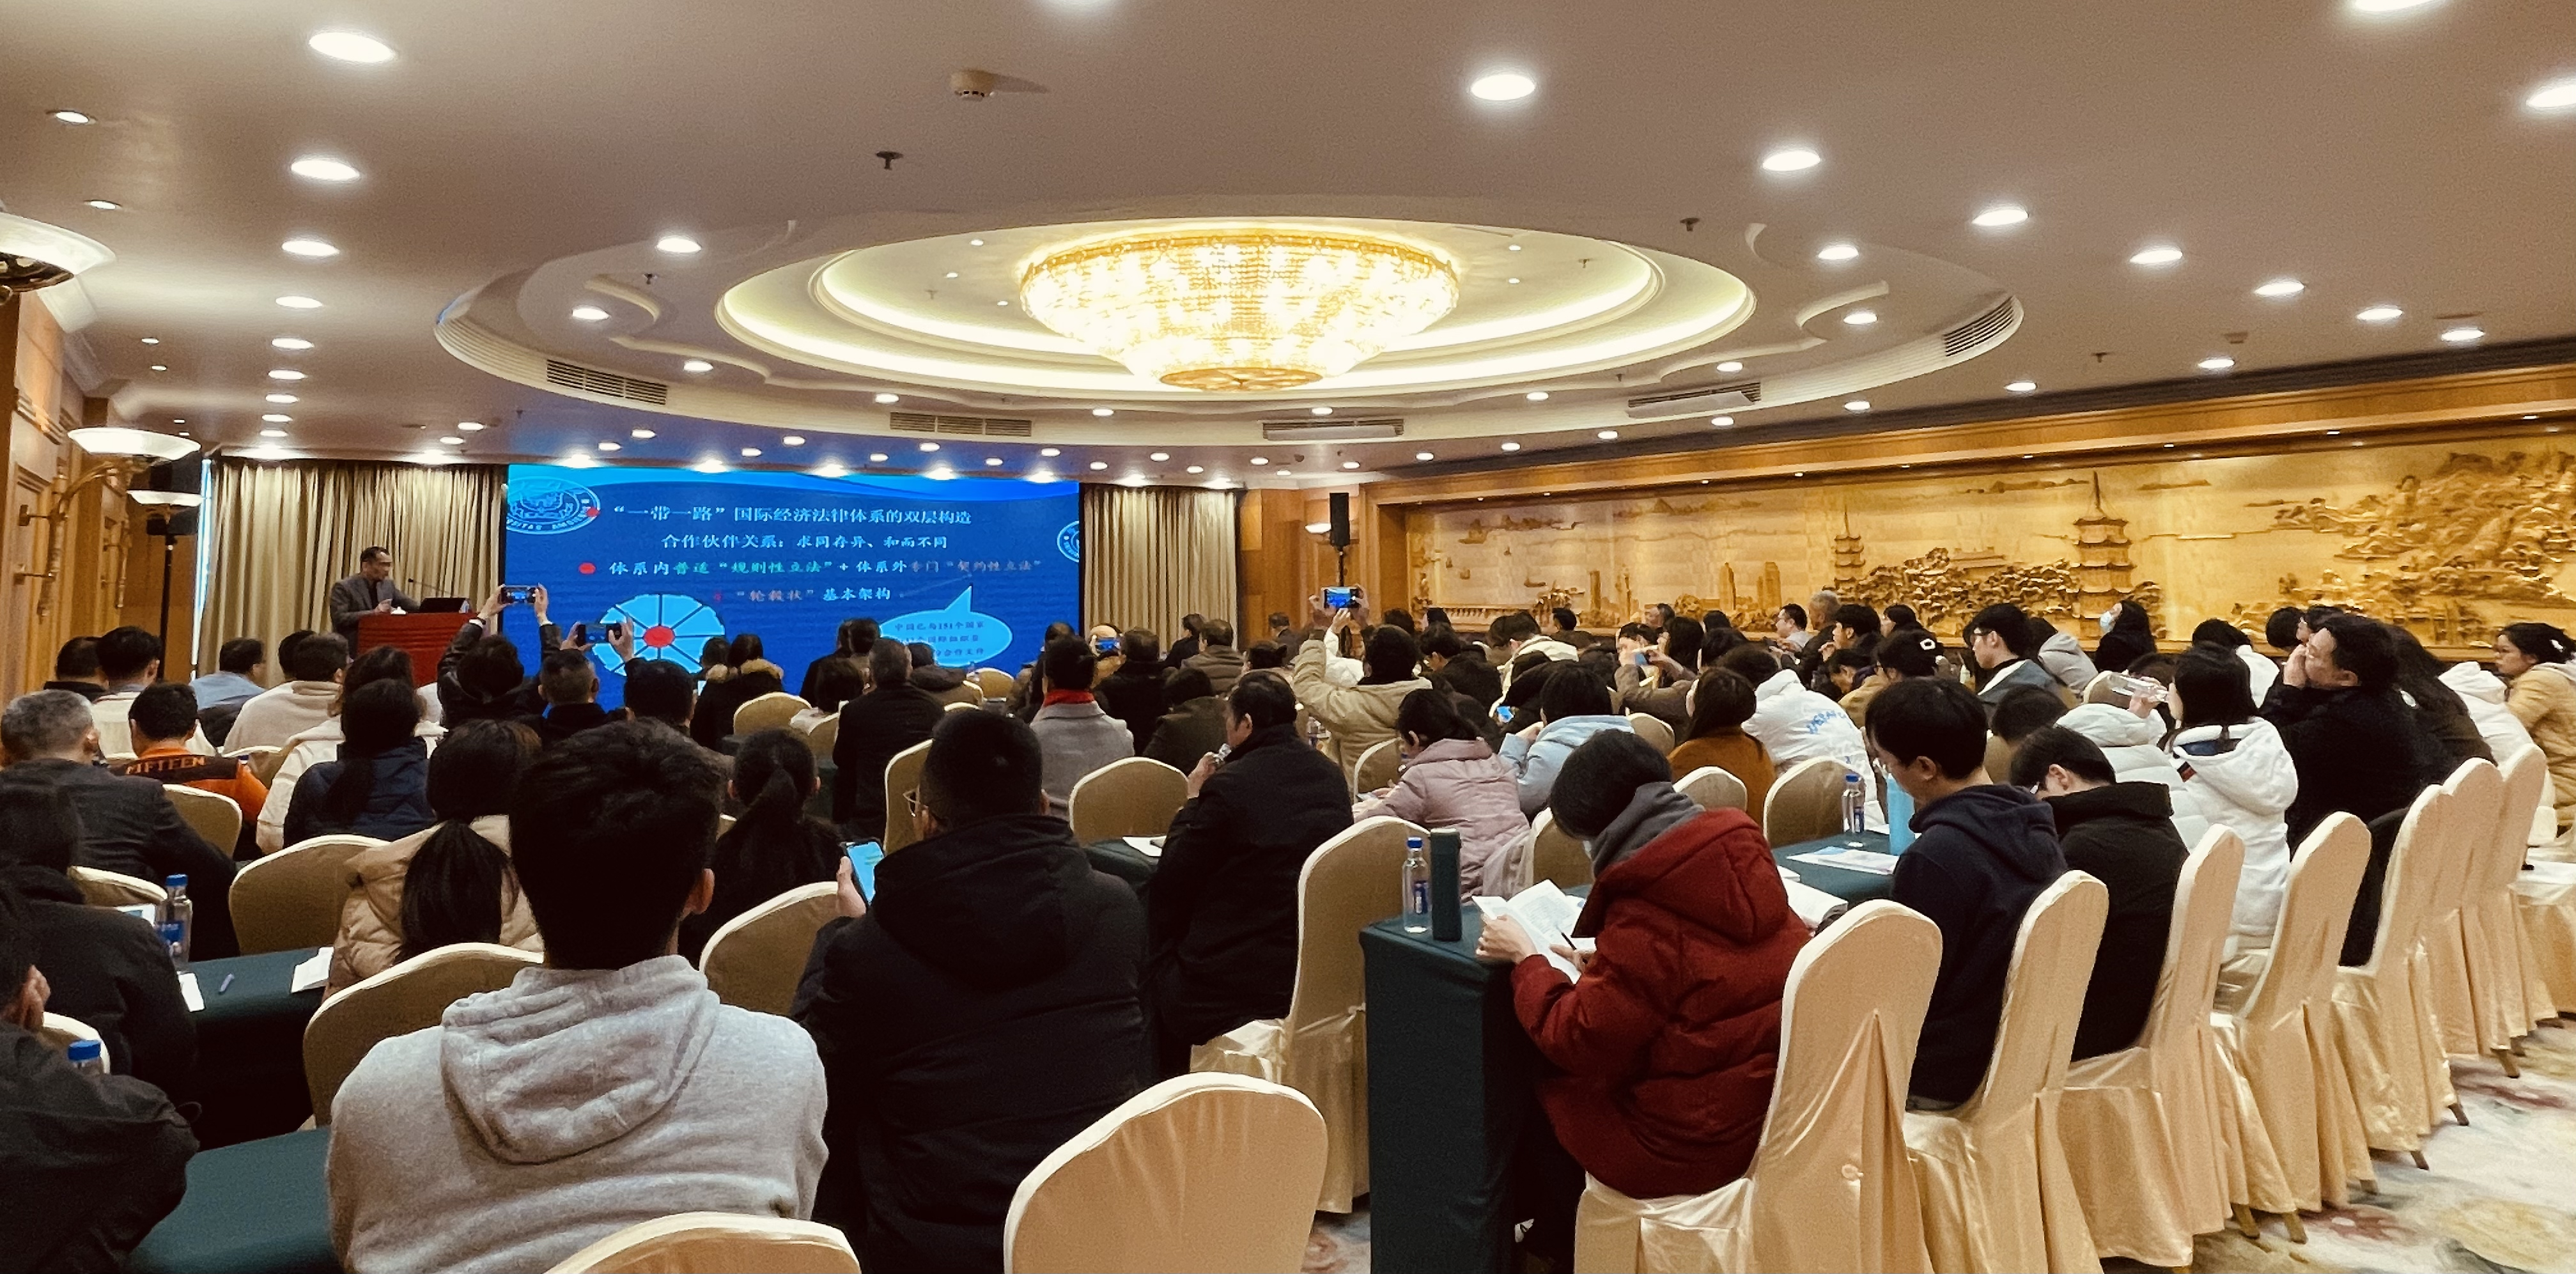 海丝仲裁法律大讲堂之“体系外变革者— 一带一路国际经济法律架构的中国特色”讲座在福州成功举办